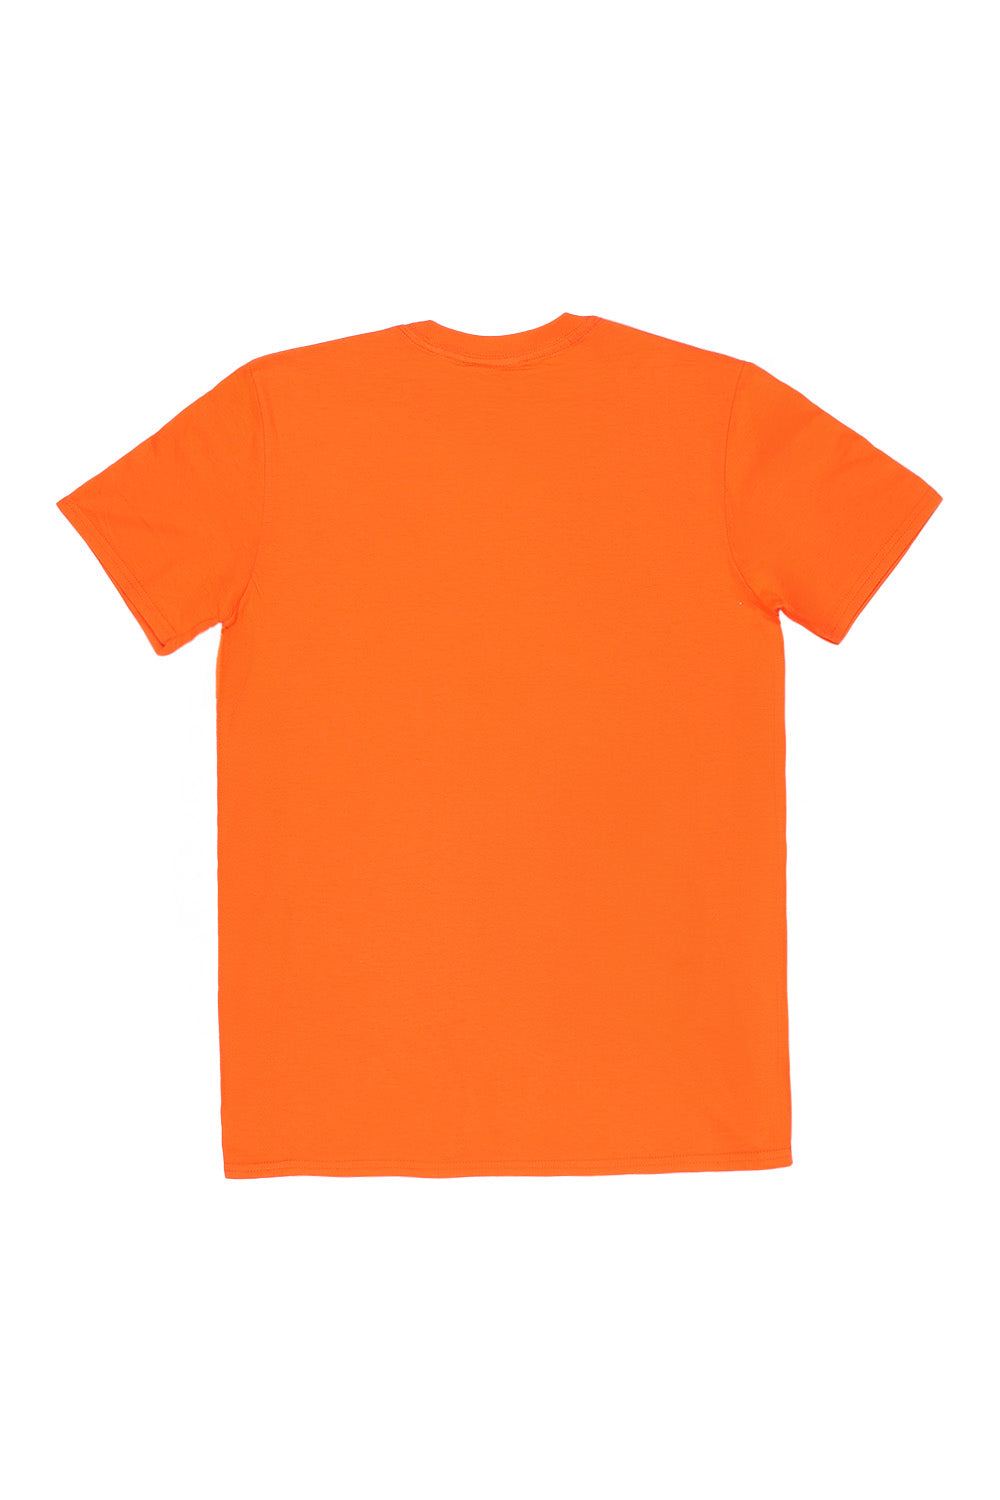 Los Angeles T-Shirt in Orange (Custom Packs)